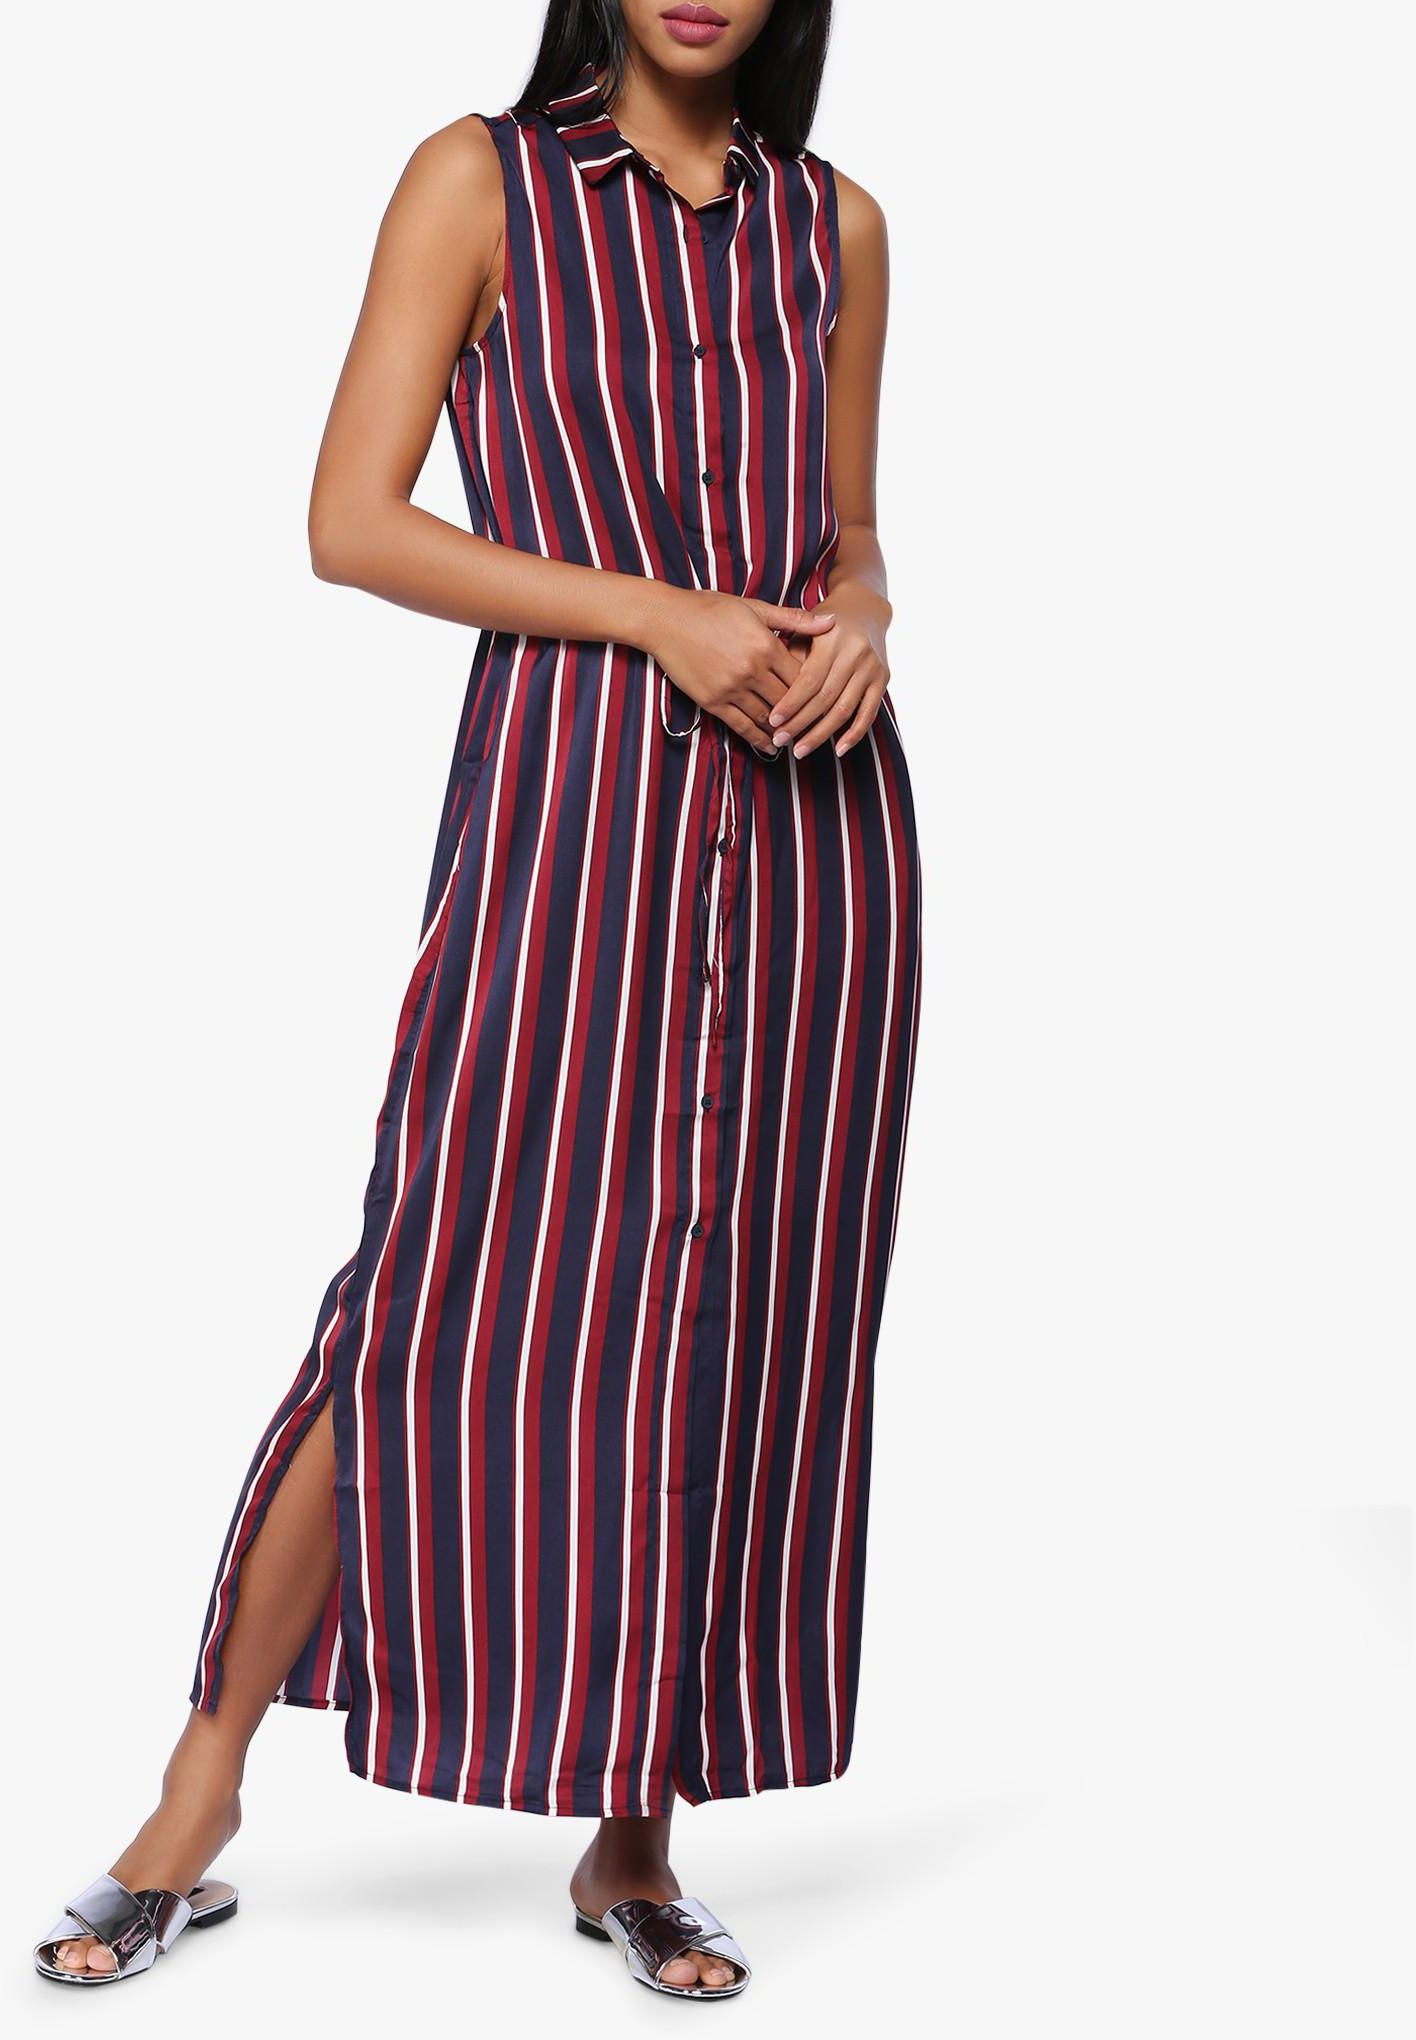 Flowy Striped Dress